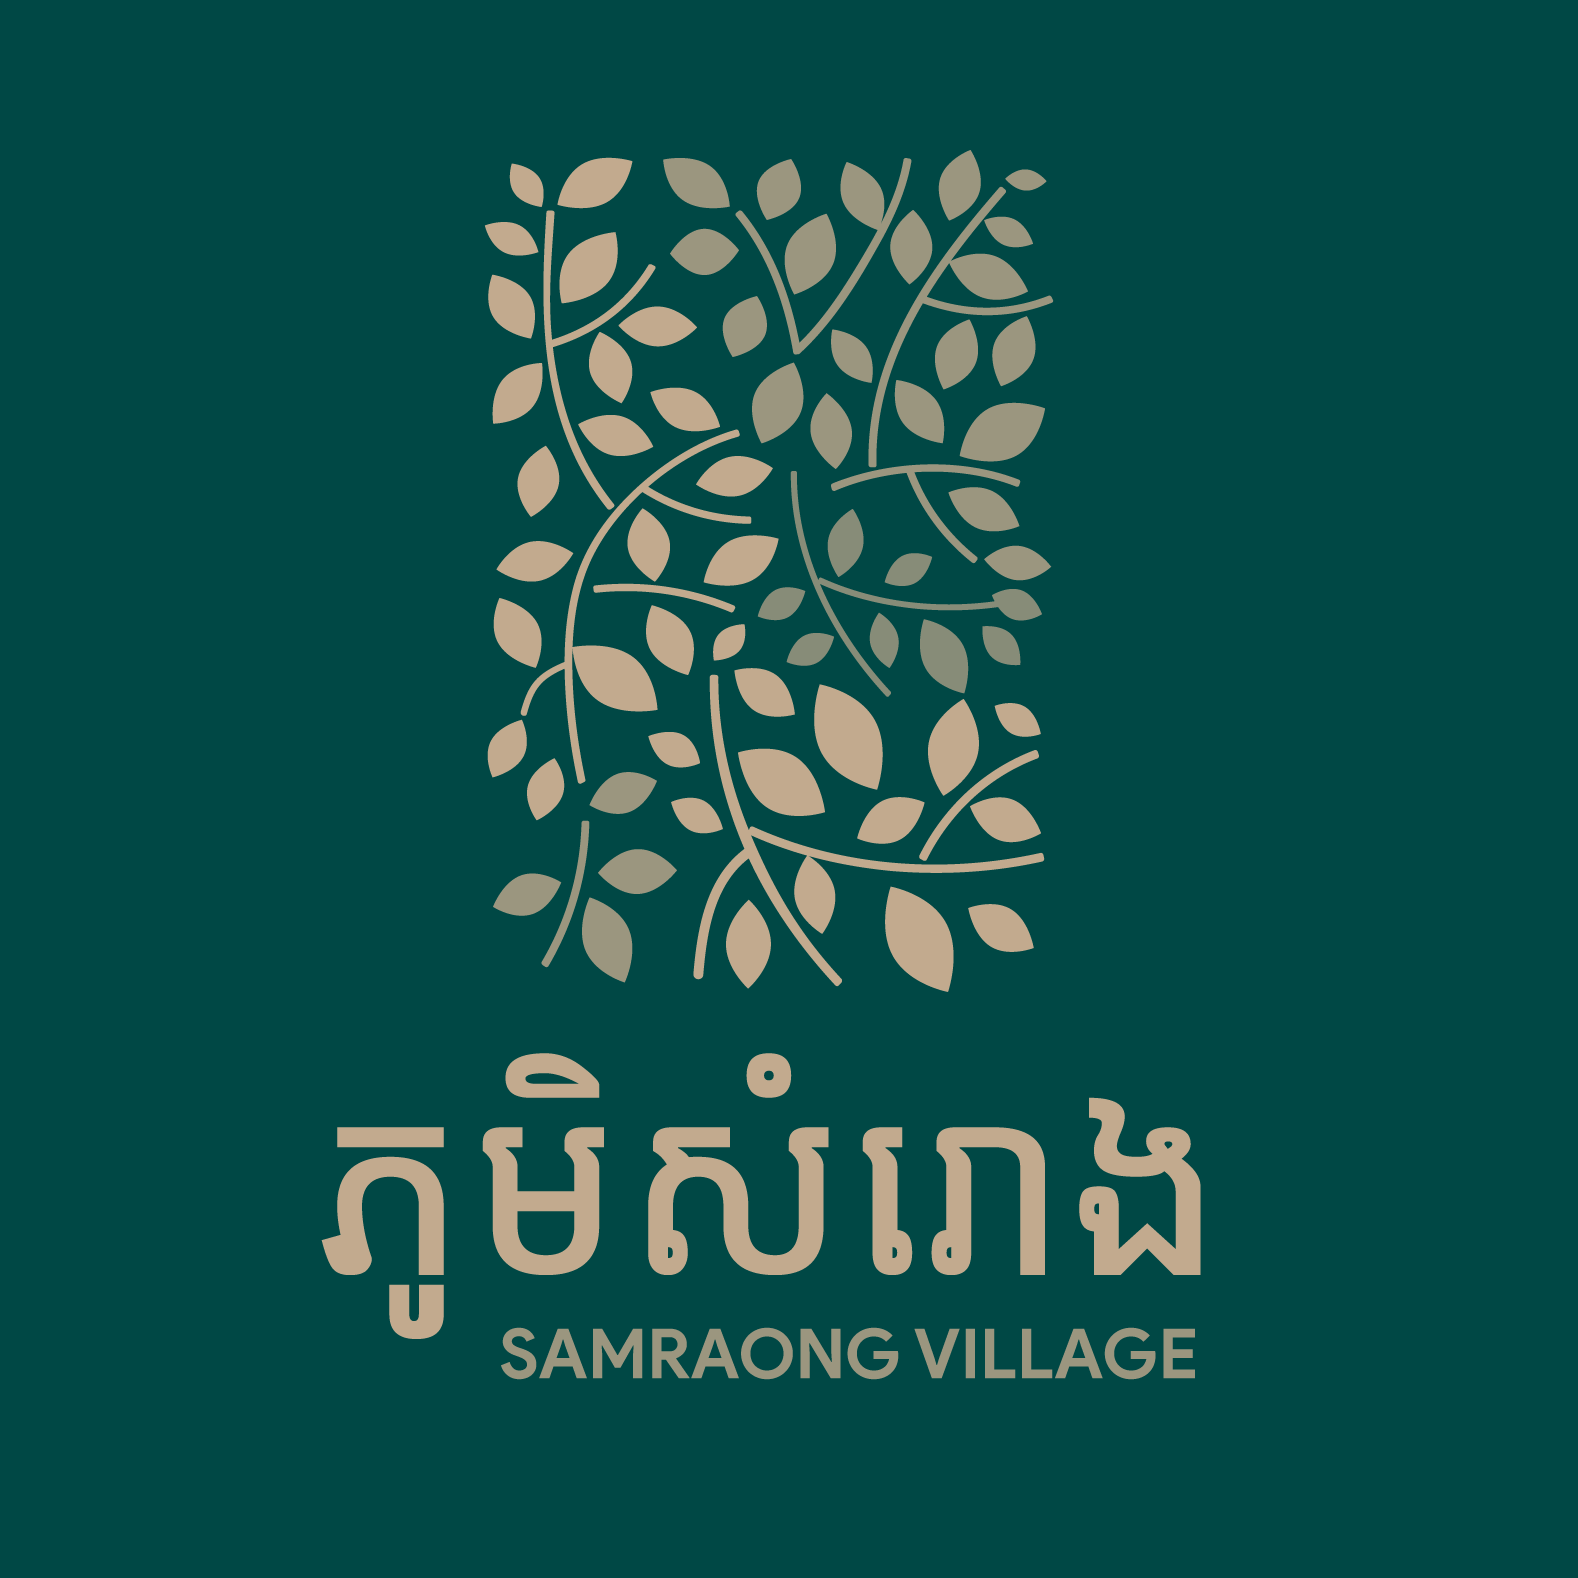 Samraong Village